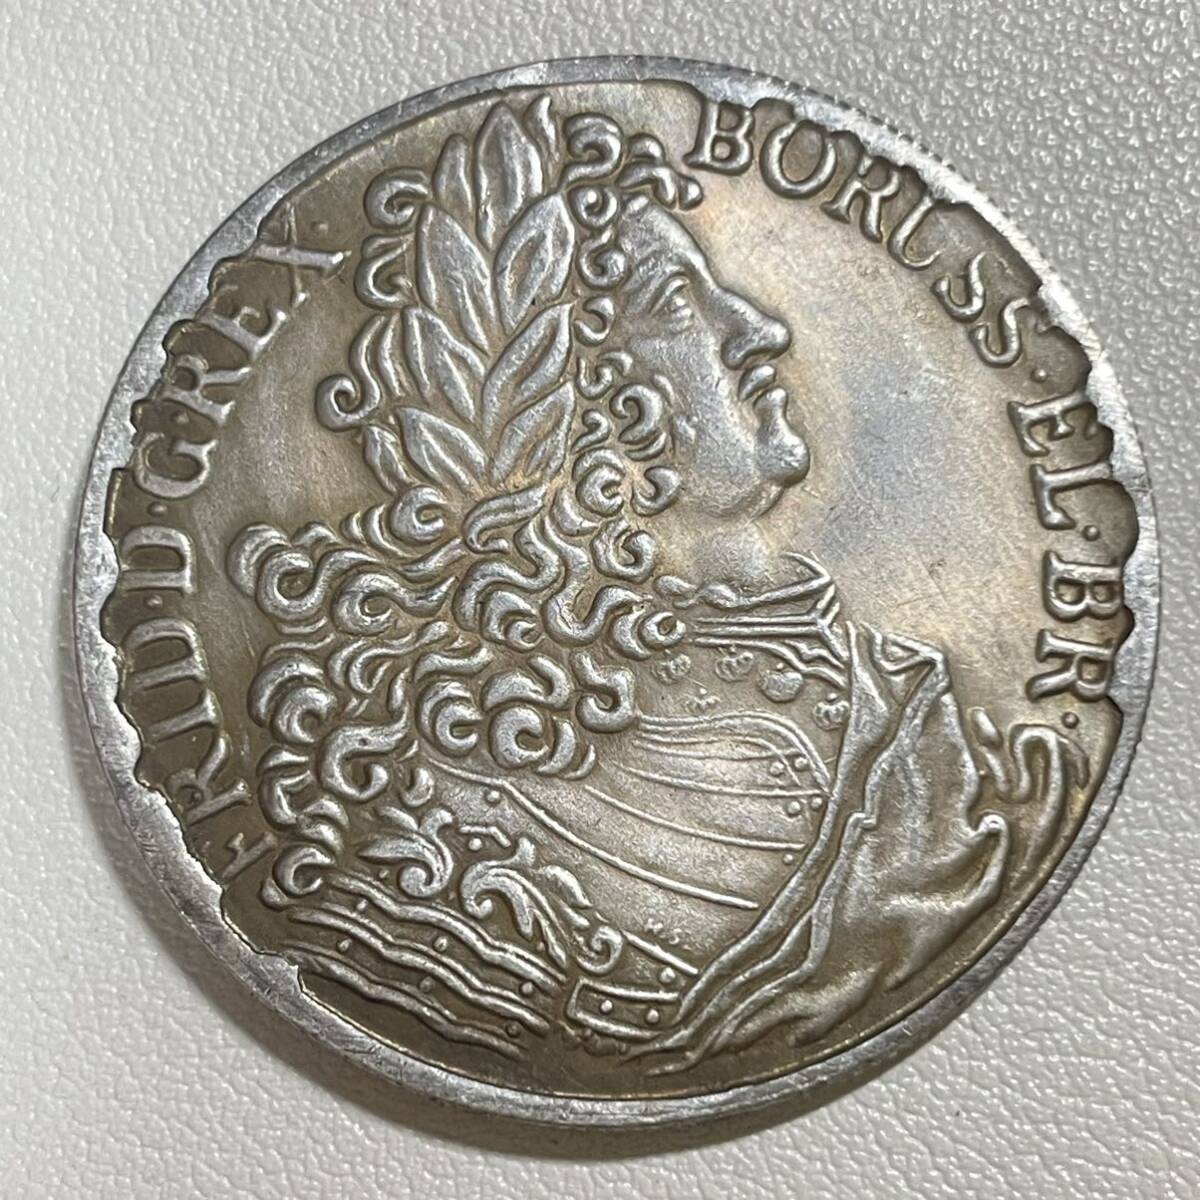 ドイツ 硬貨 古銭 プロイセン王国 1842年 フリードリヒ1世 月桂樹 国章 クラウン コイン 重22.78g_画像2